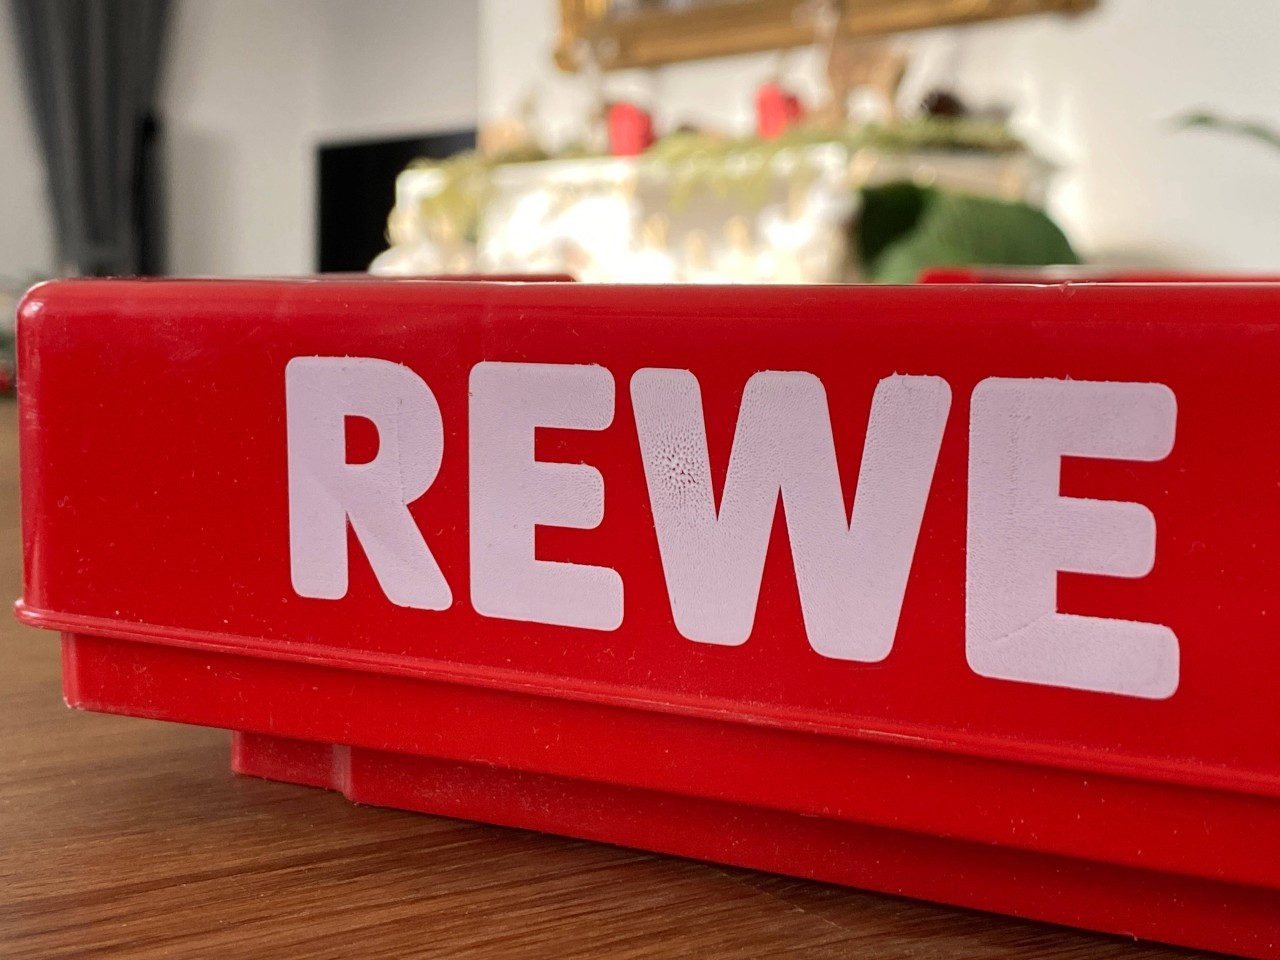 Rewe und Co. rufen Produkte zurück, die gesundheitlich schädlich sein könnten. (Symbolfoto)